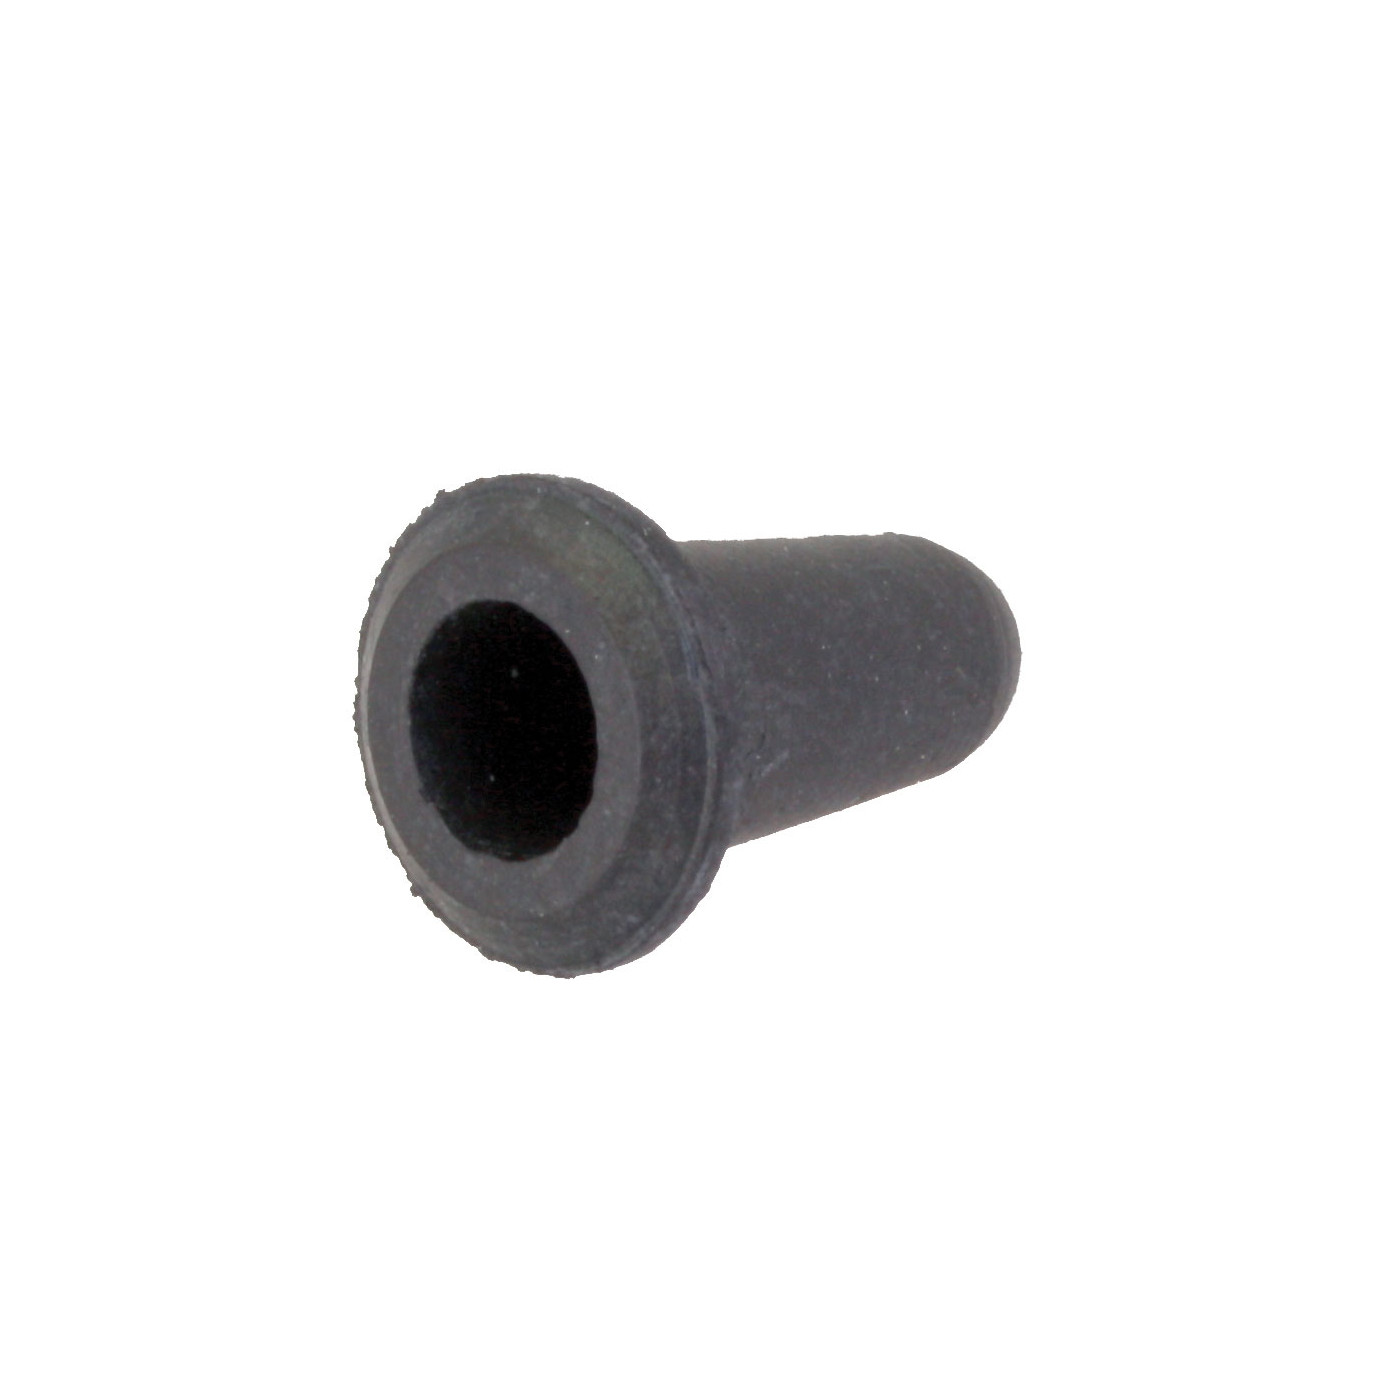 Gummitülle für Türblech, 6 mm